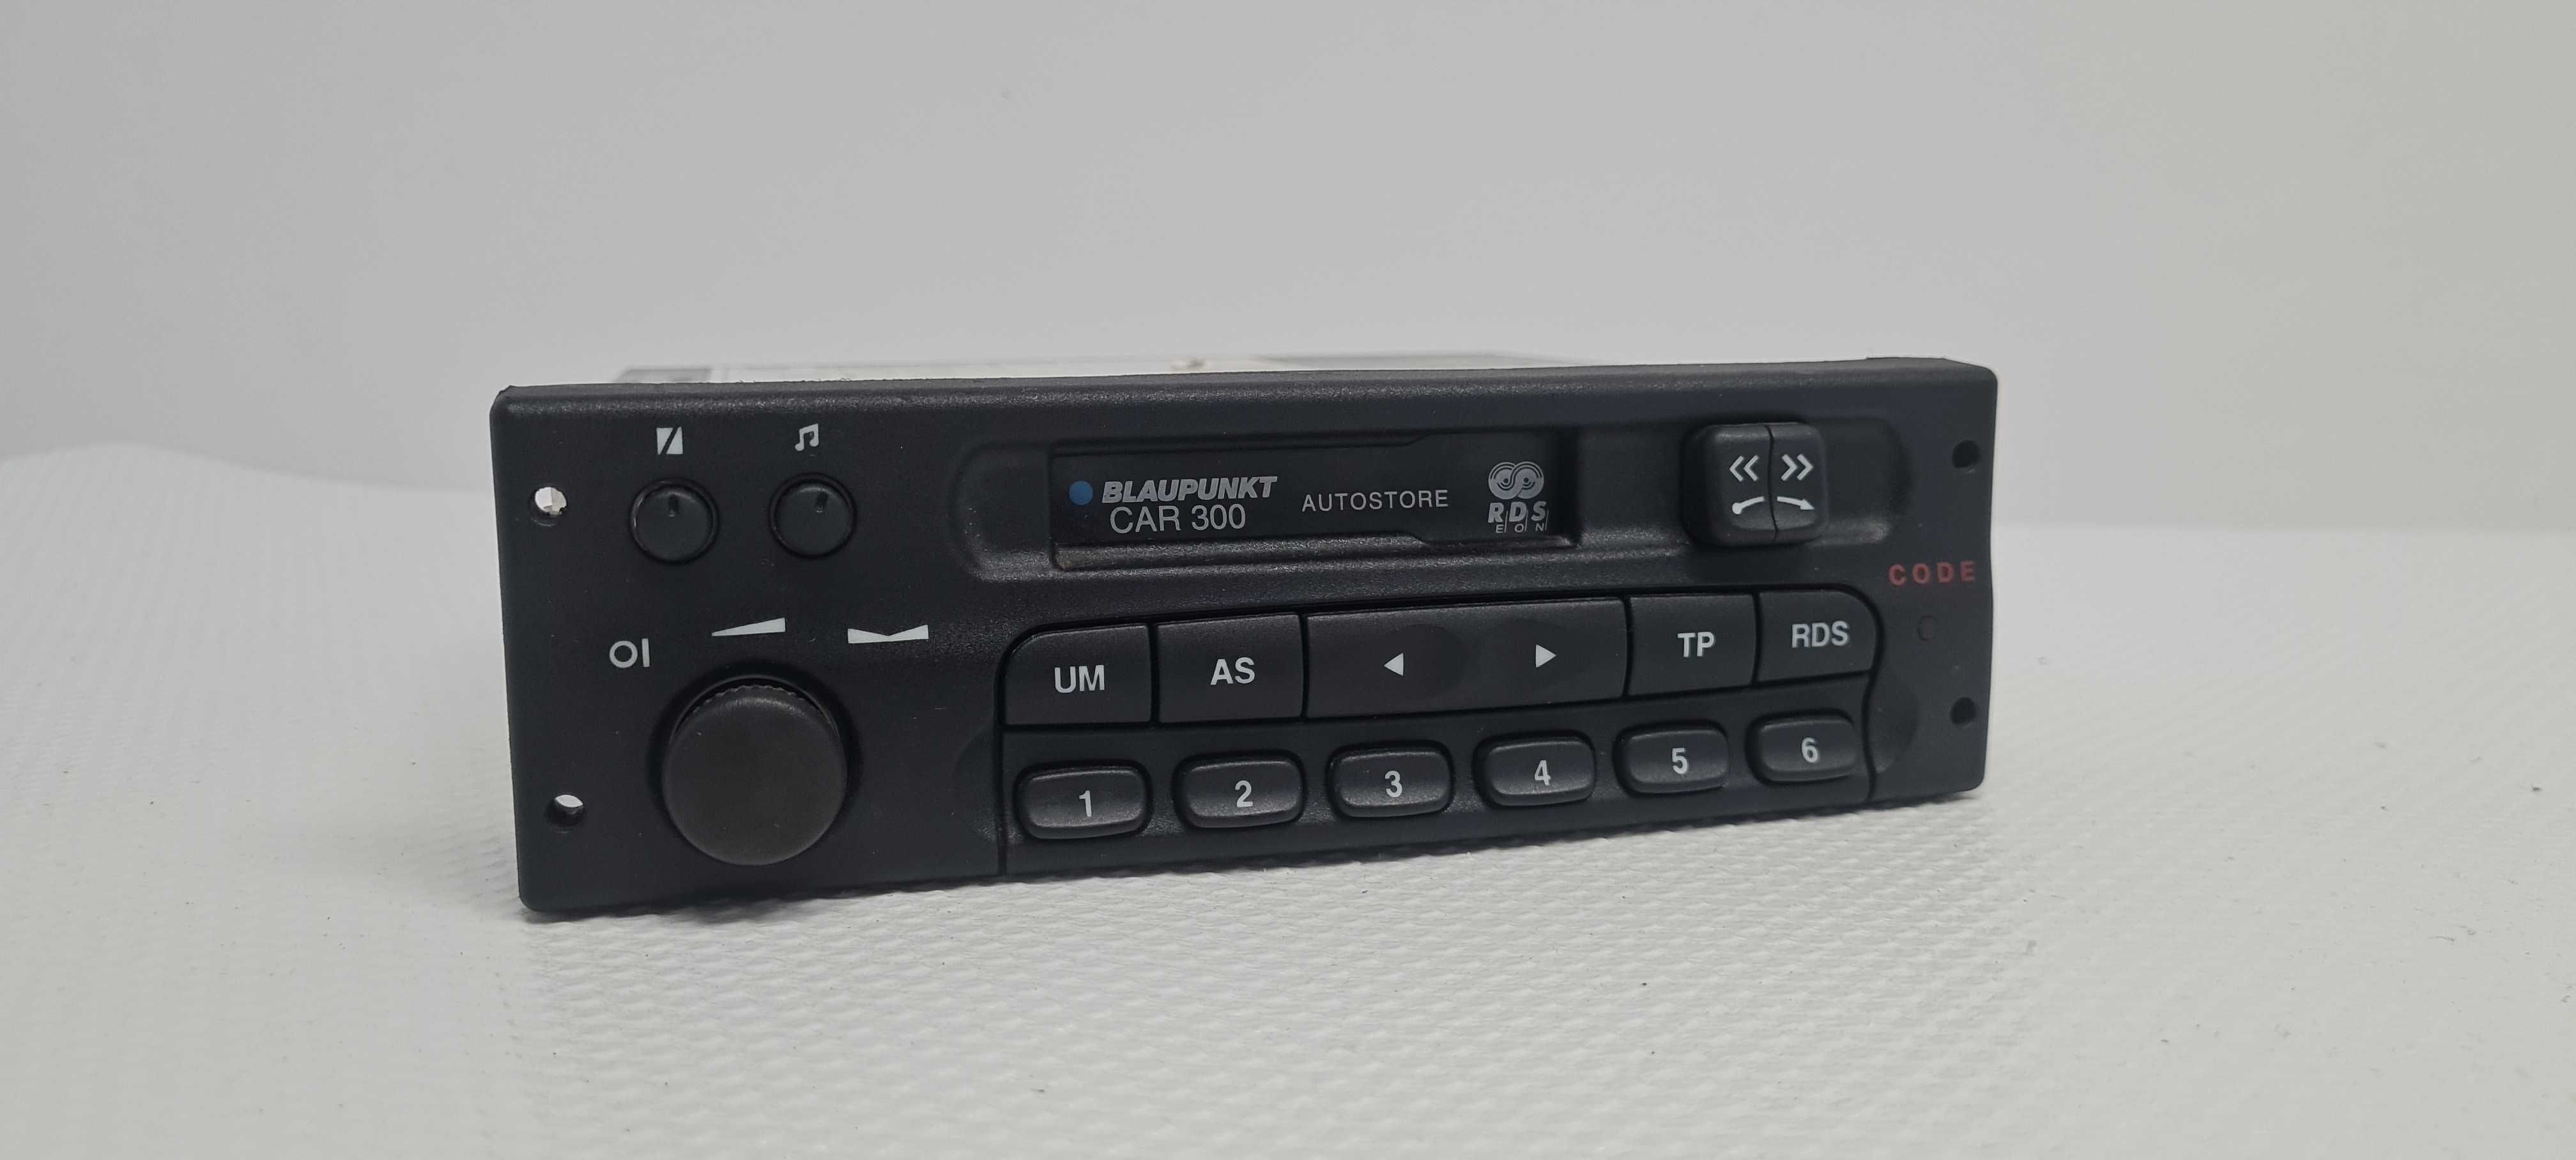 Opel Corsa Astra Vectra Car300 Radio kaseta 764785---2320 ODBLOKOWANE